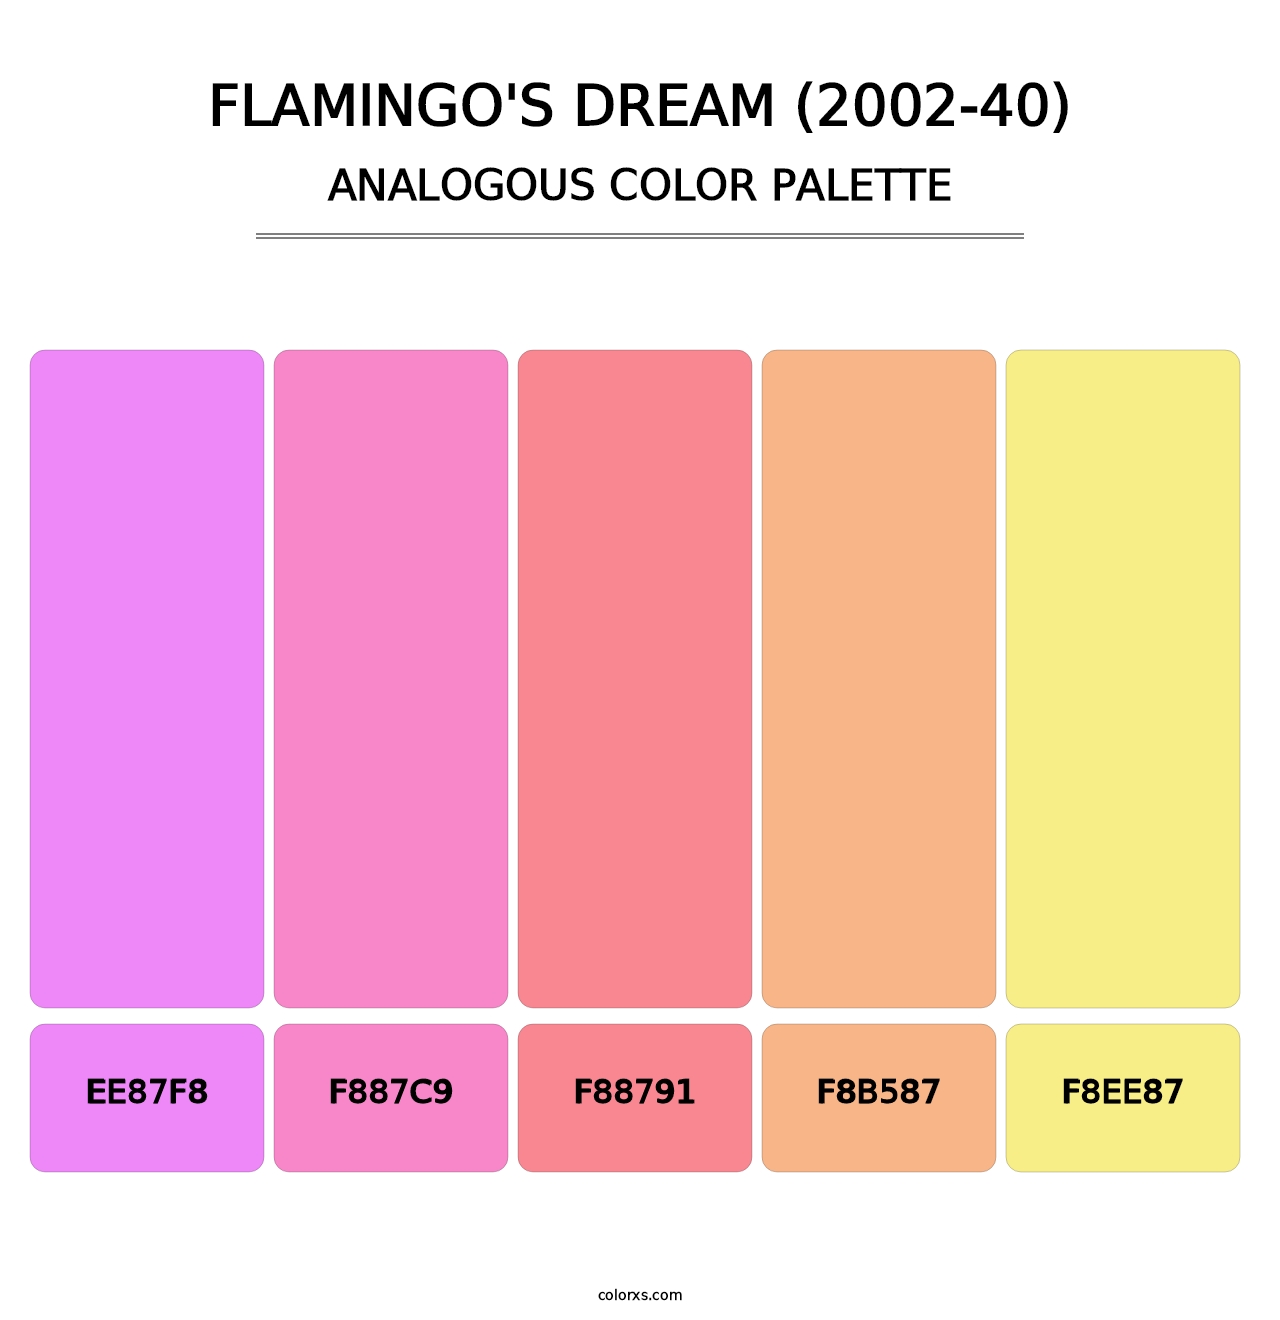 Flamingo's Dream (2002-40) - Analogous Color Palette